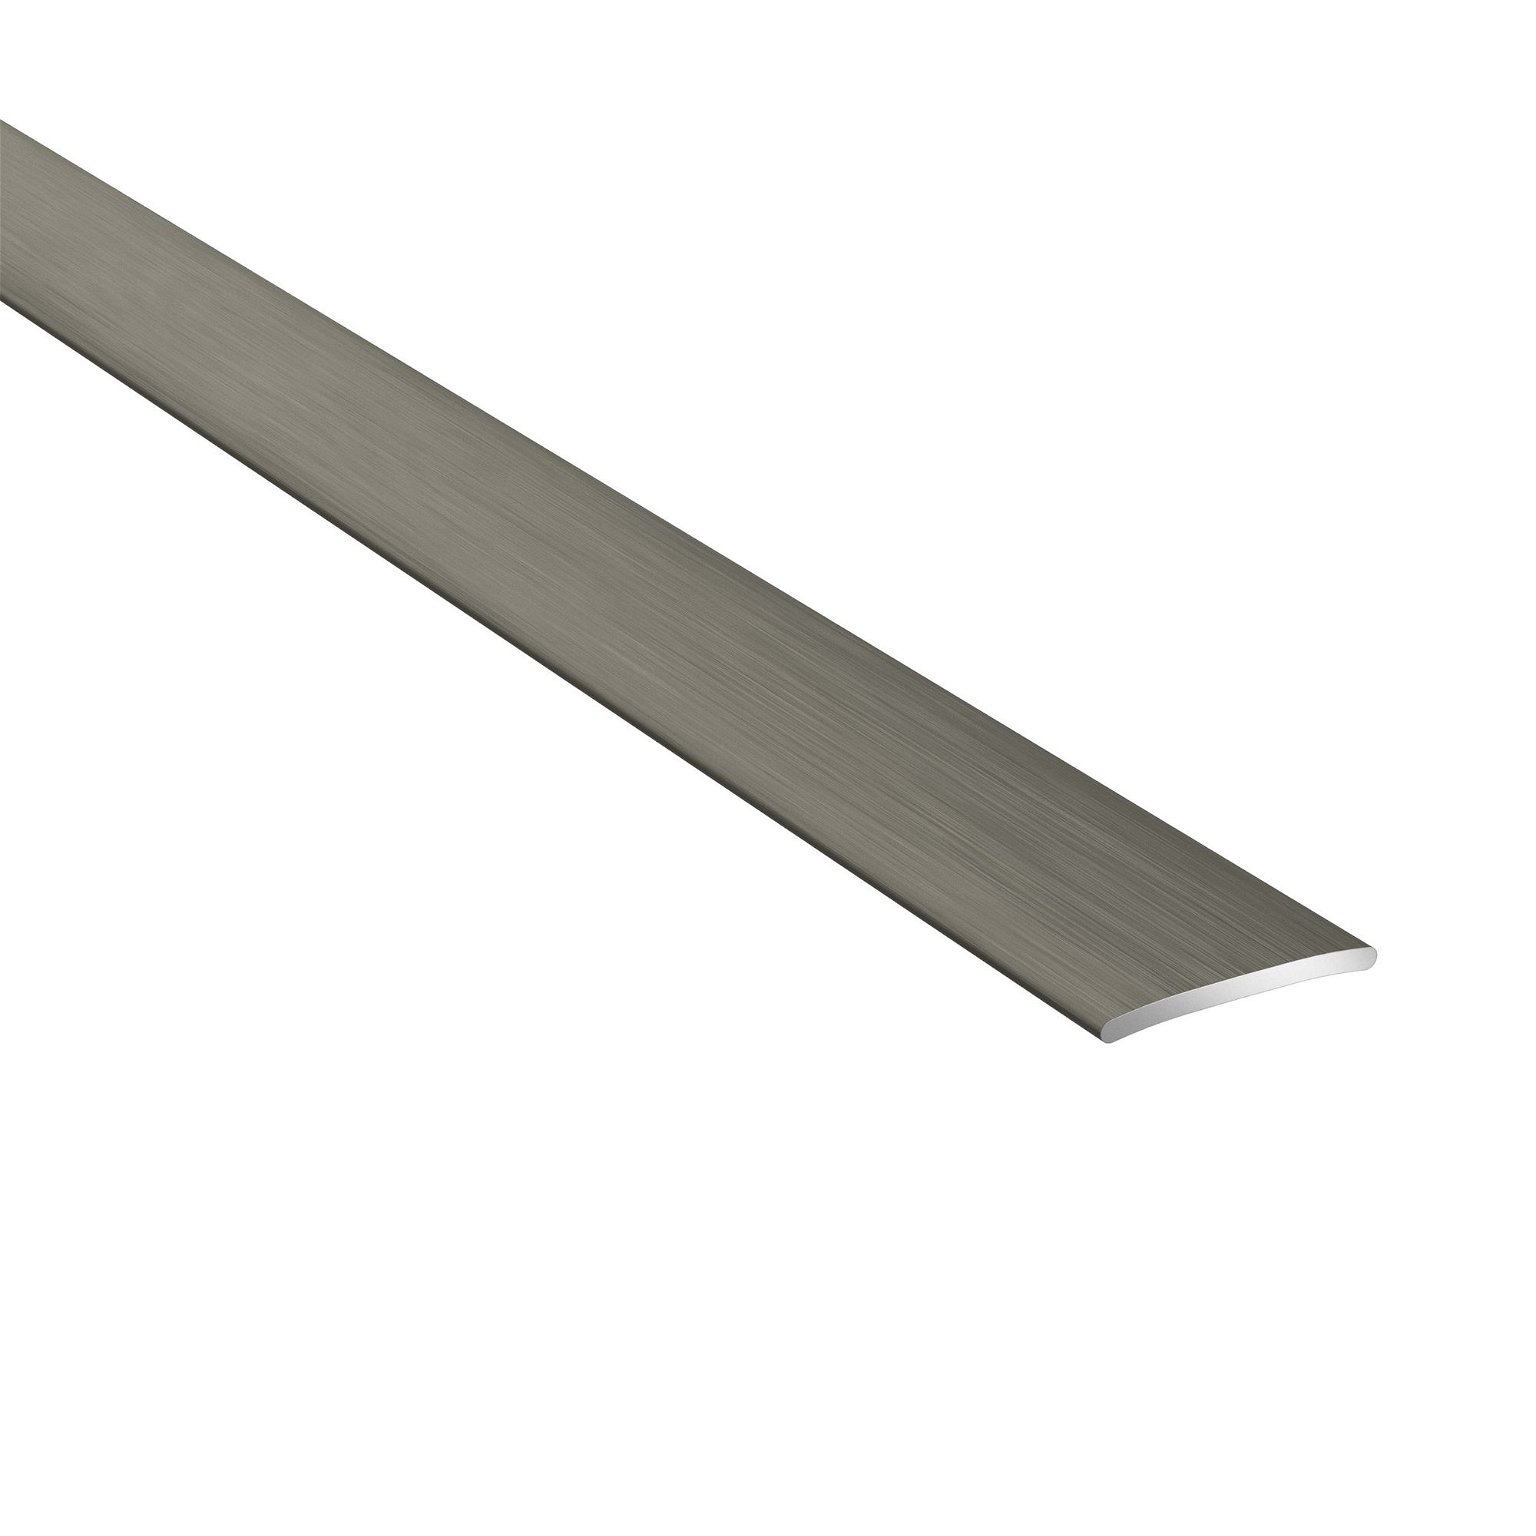 Aliumininė grindų juostelė PRO20 B3, šukuoto titano sp., 20 mm pločio, 93 cm ilgio